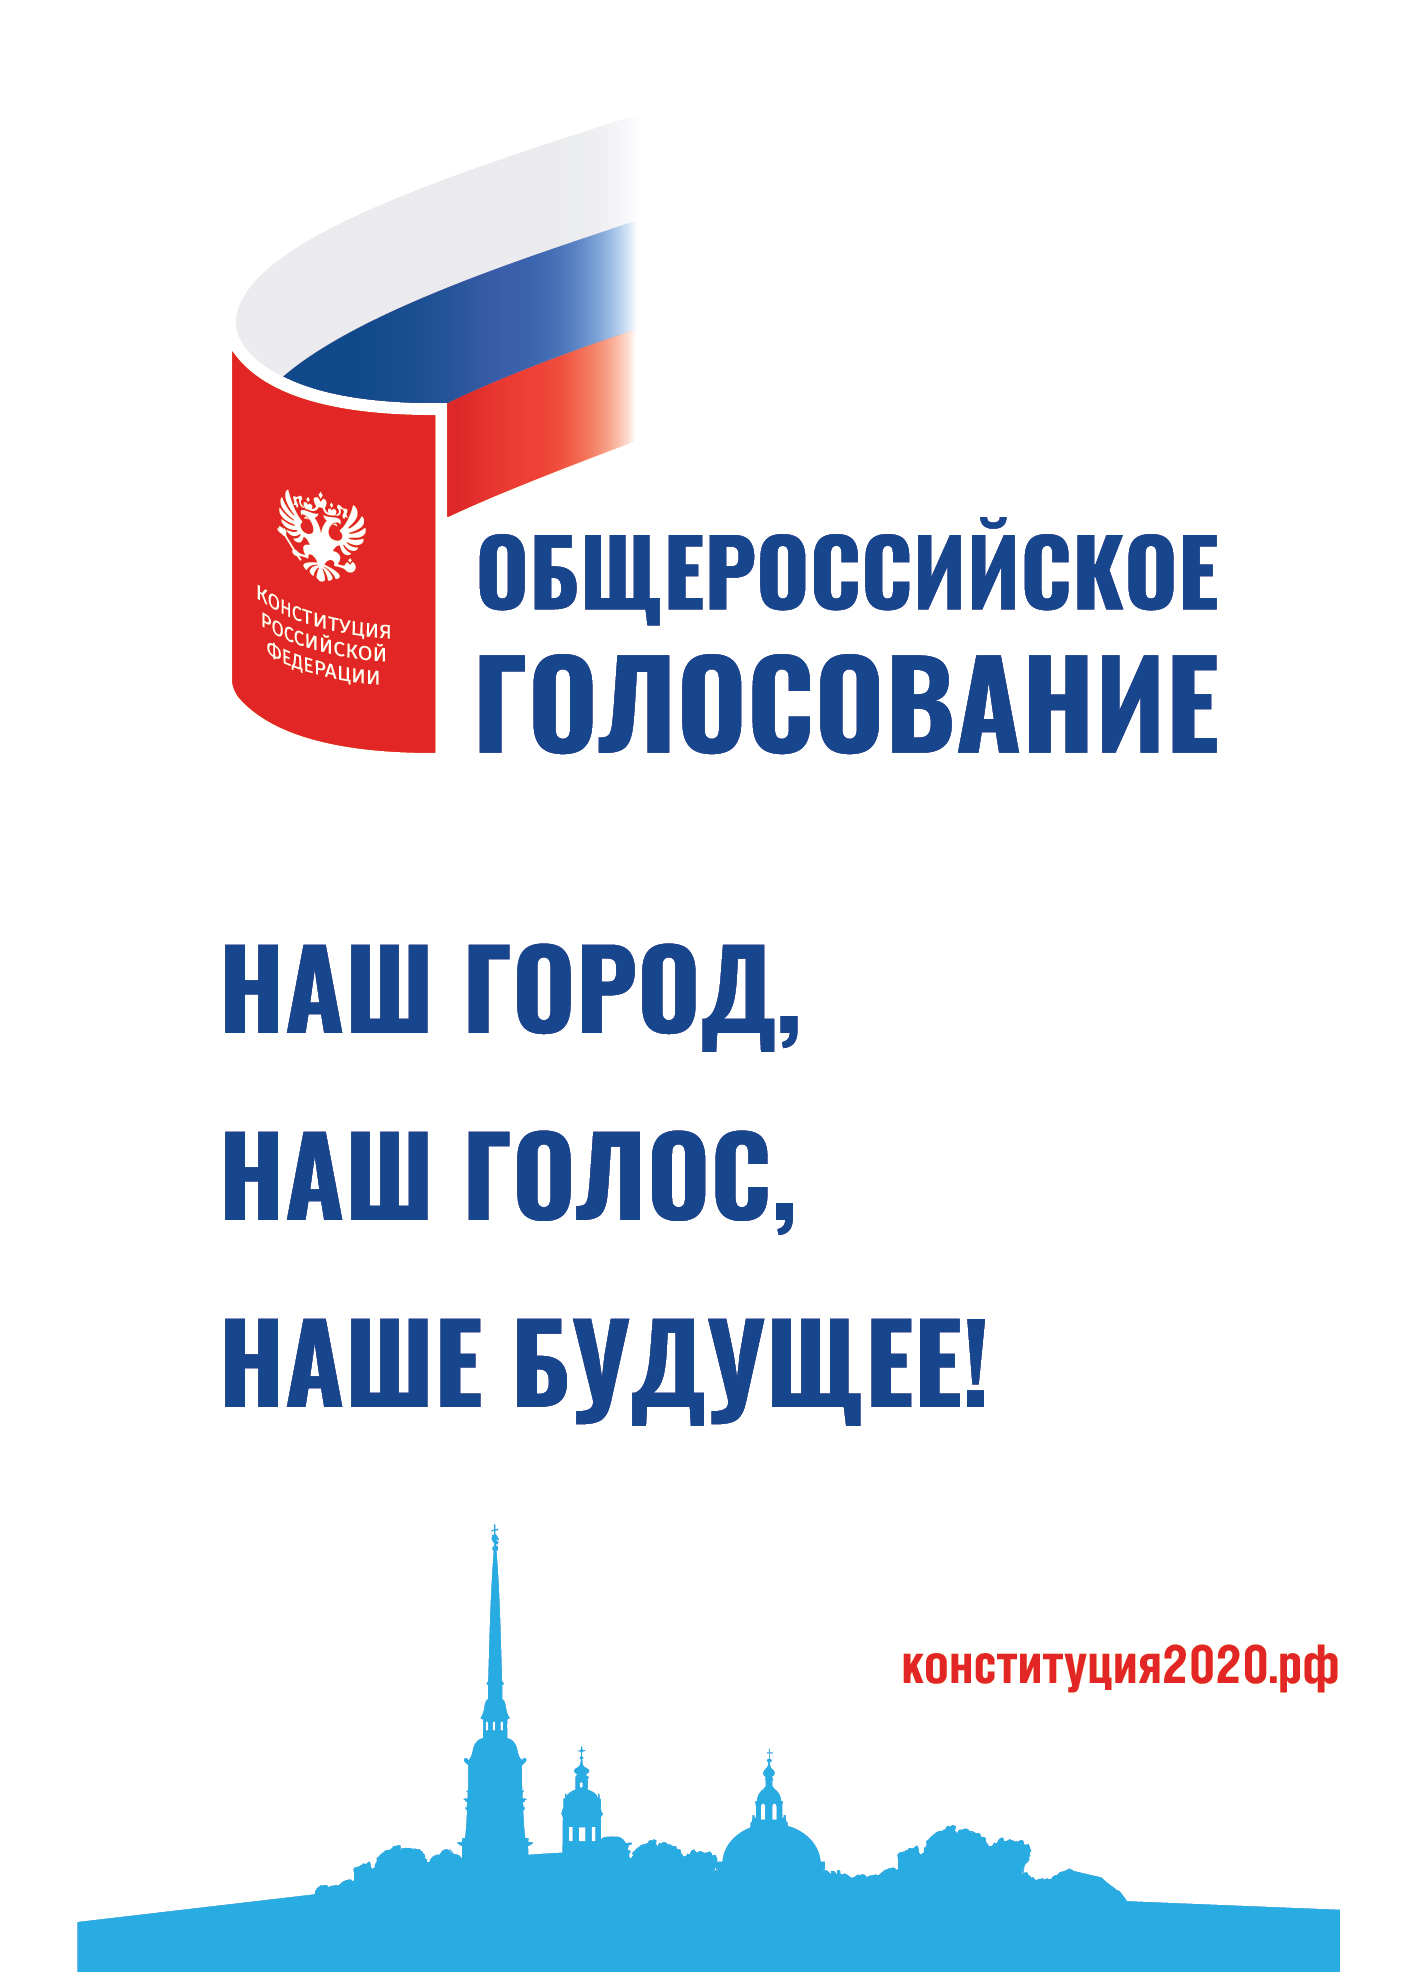 С 25 июня по 1 июля пройдет всероссийское голосование по поправкам в Конституцию